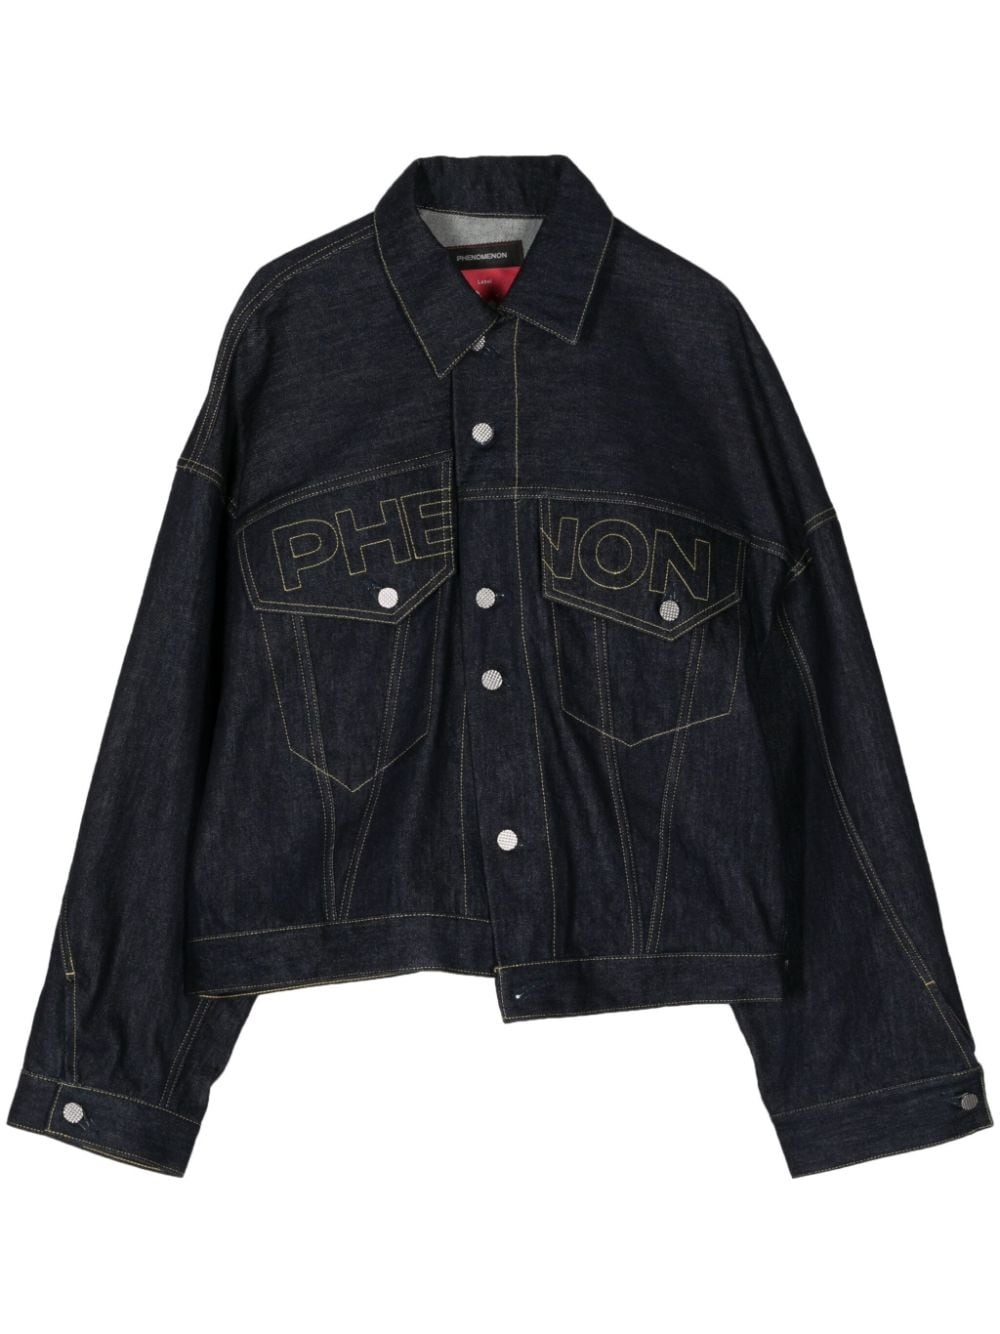 Phenon cotton denim jacket - 1